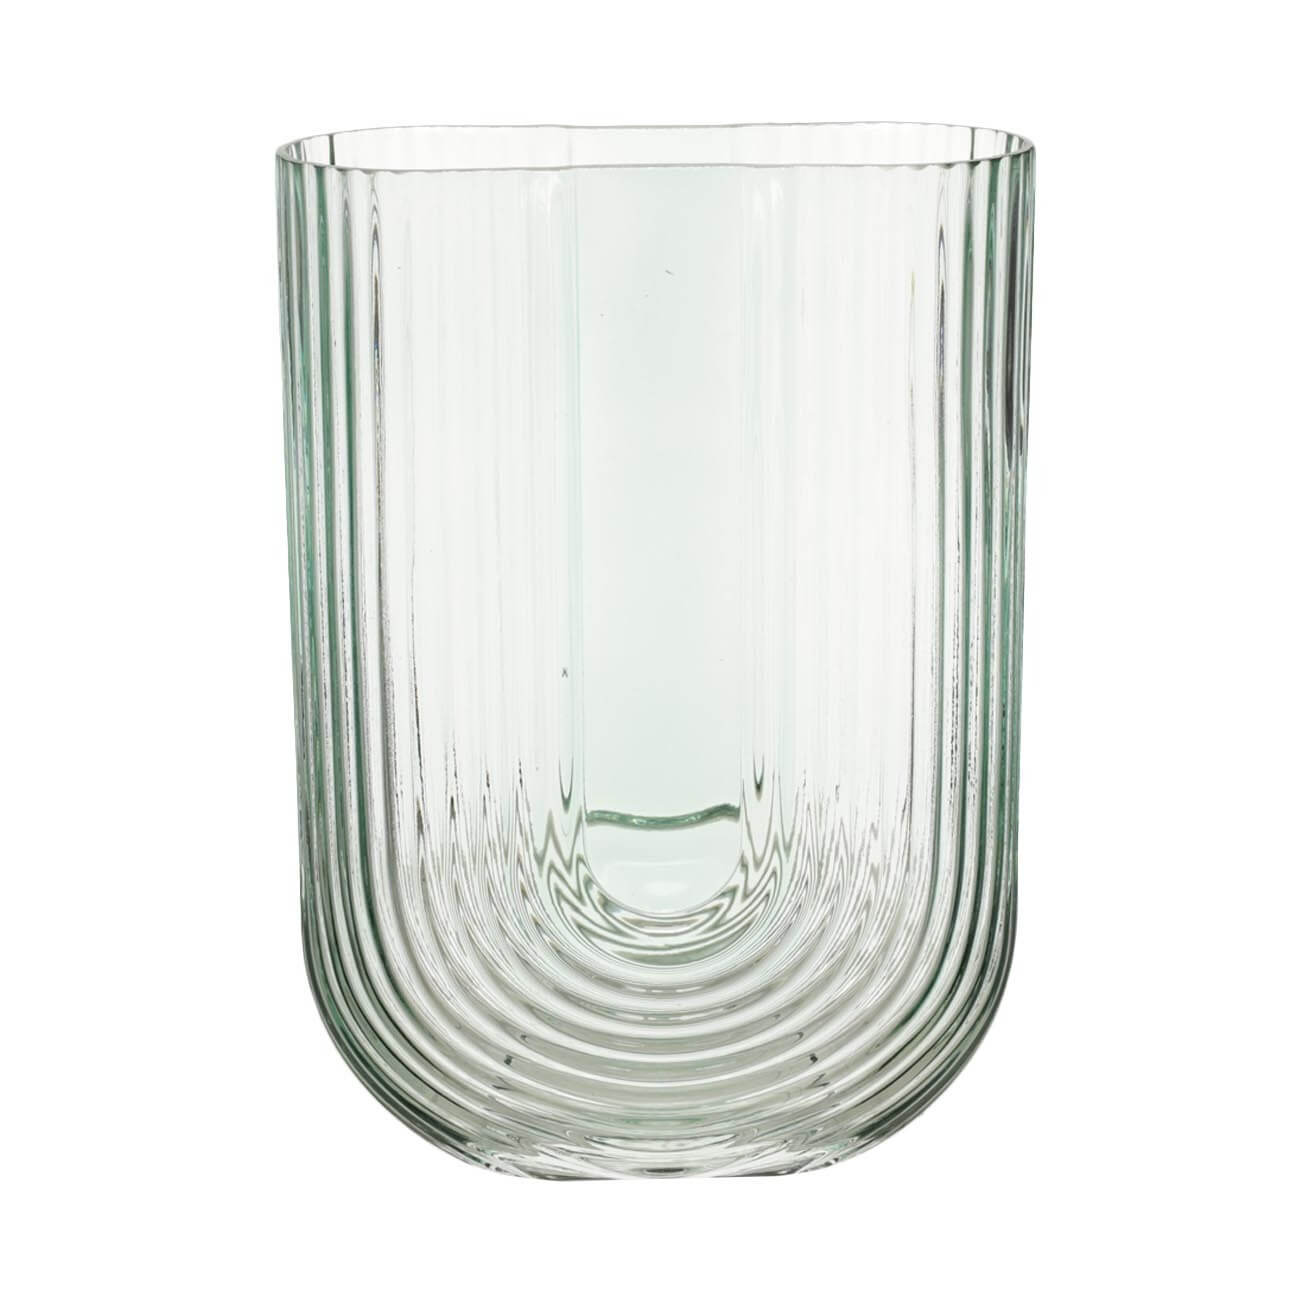 ваза mary стекло прозрачно зеленая 28 5 см Ваза для цветов, 23 см, стекло, зеленая, Арка, Arch